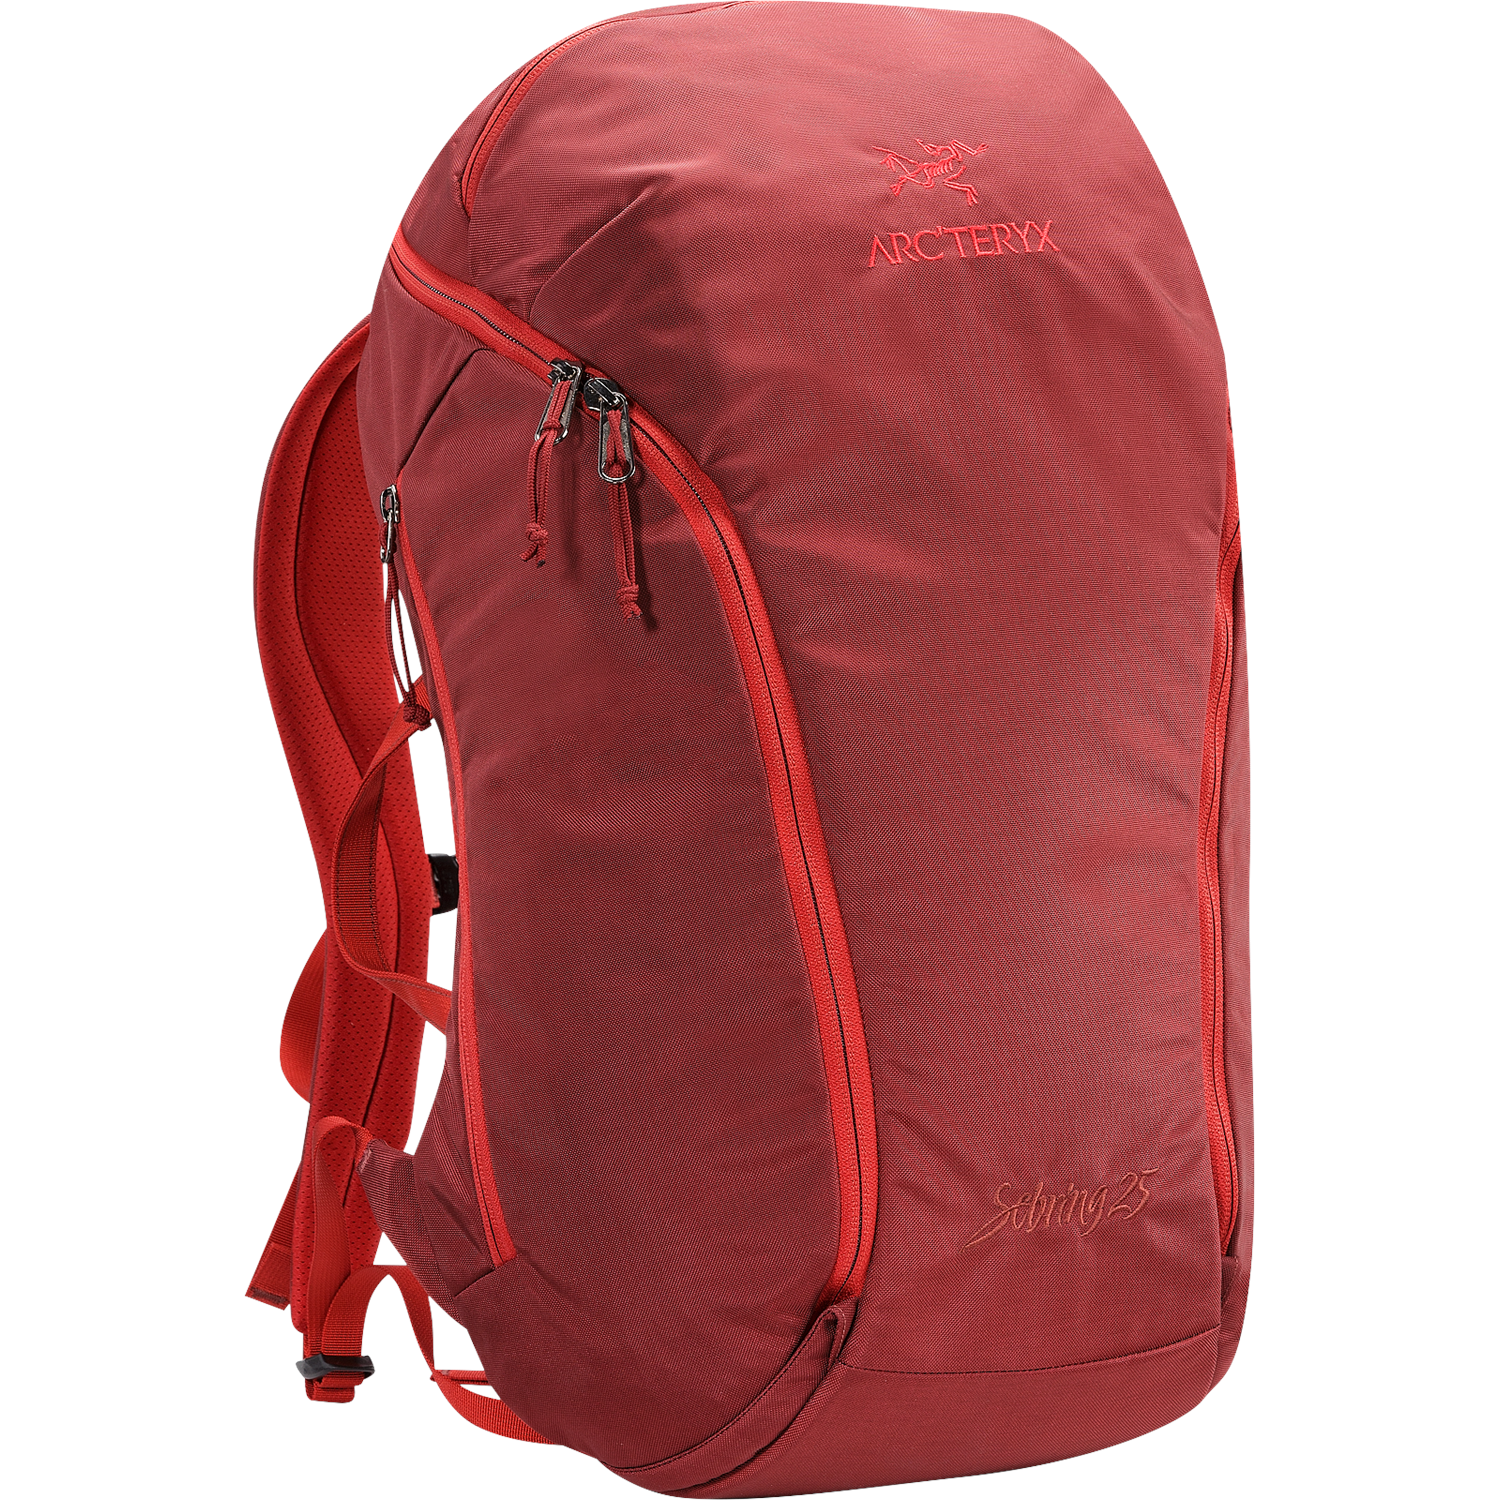 Arc'teryx Sebring 25 Backpack | evo